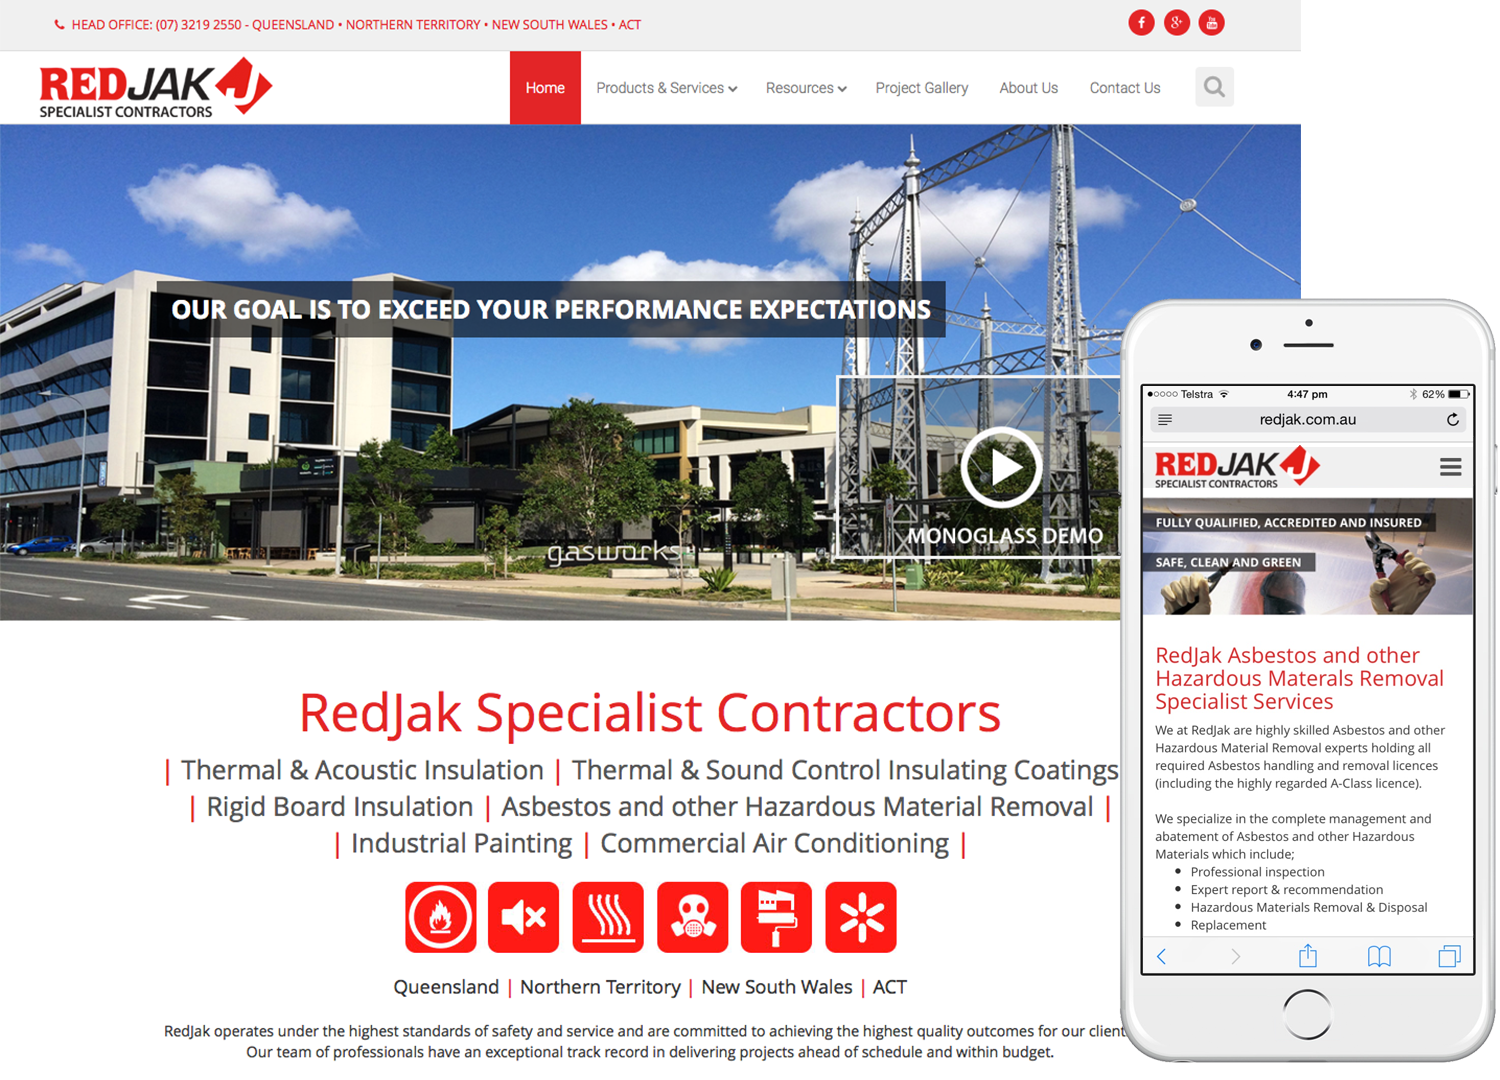 Redjak - Specialist Contractors